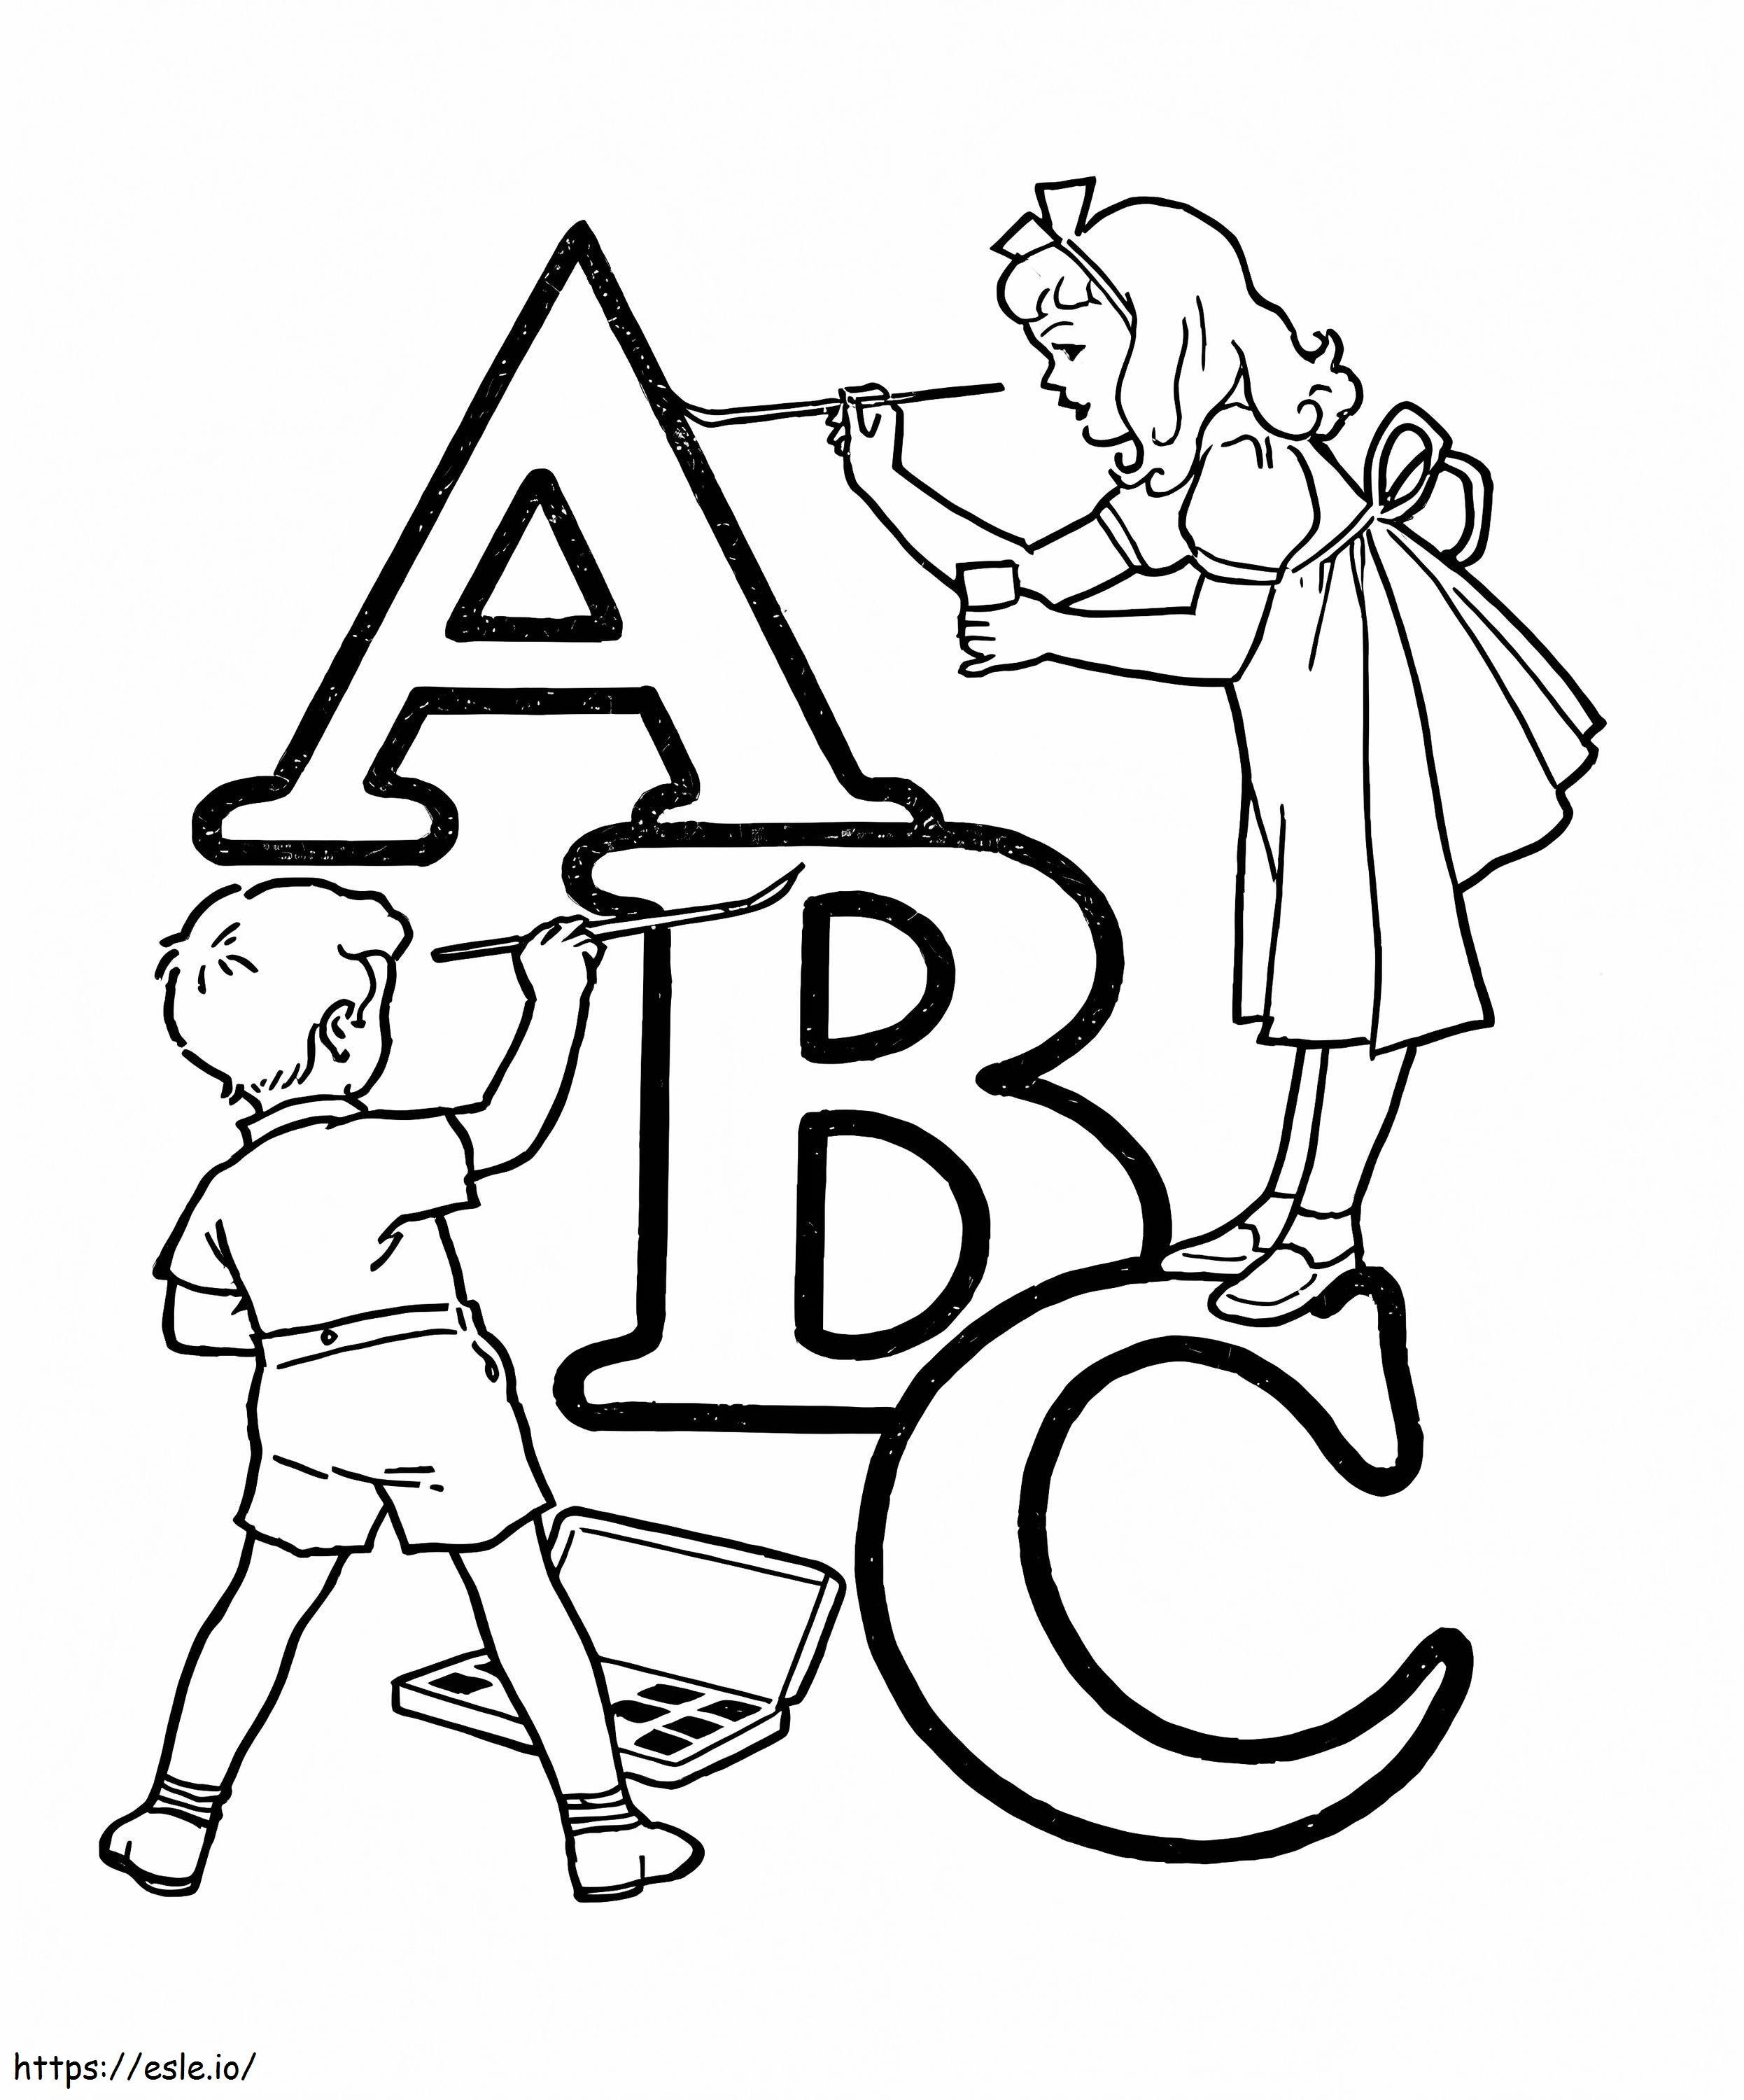 Bambini con ABC da colorare